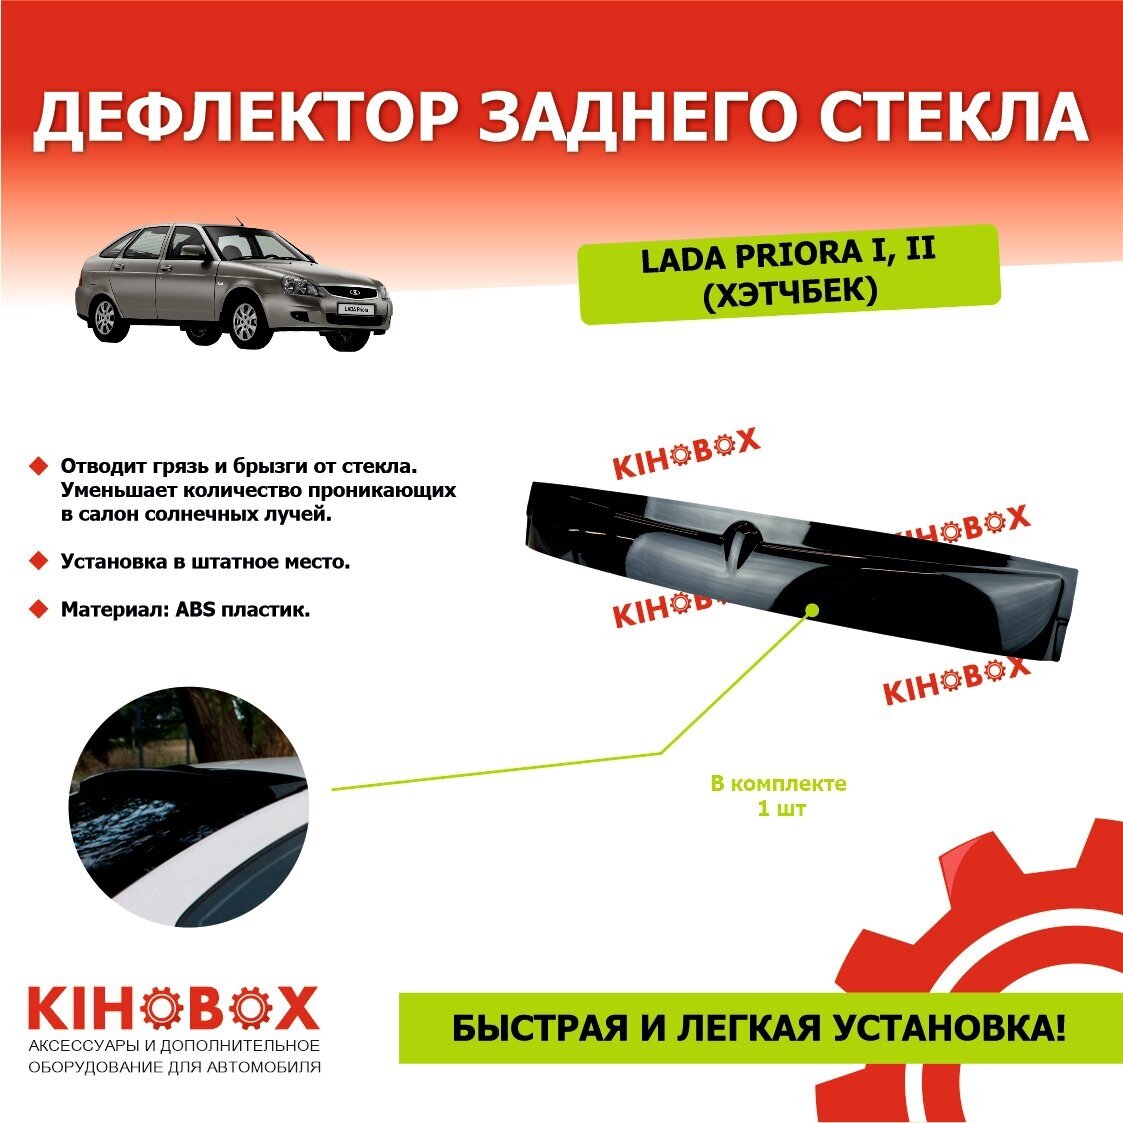 Дефлектор заднего стекла «спойлер» на Лада Приора 12 хэтчбек черный ABS пластик KIHOBOX АРТ 5932902